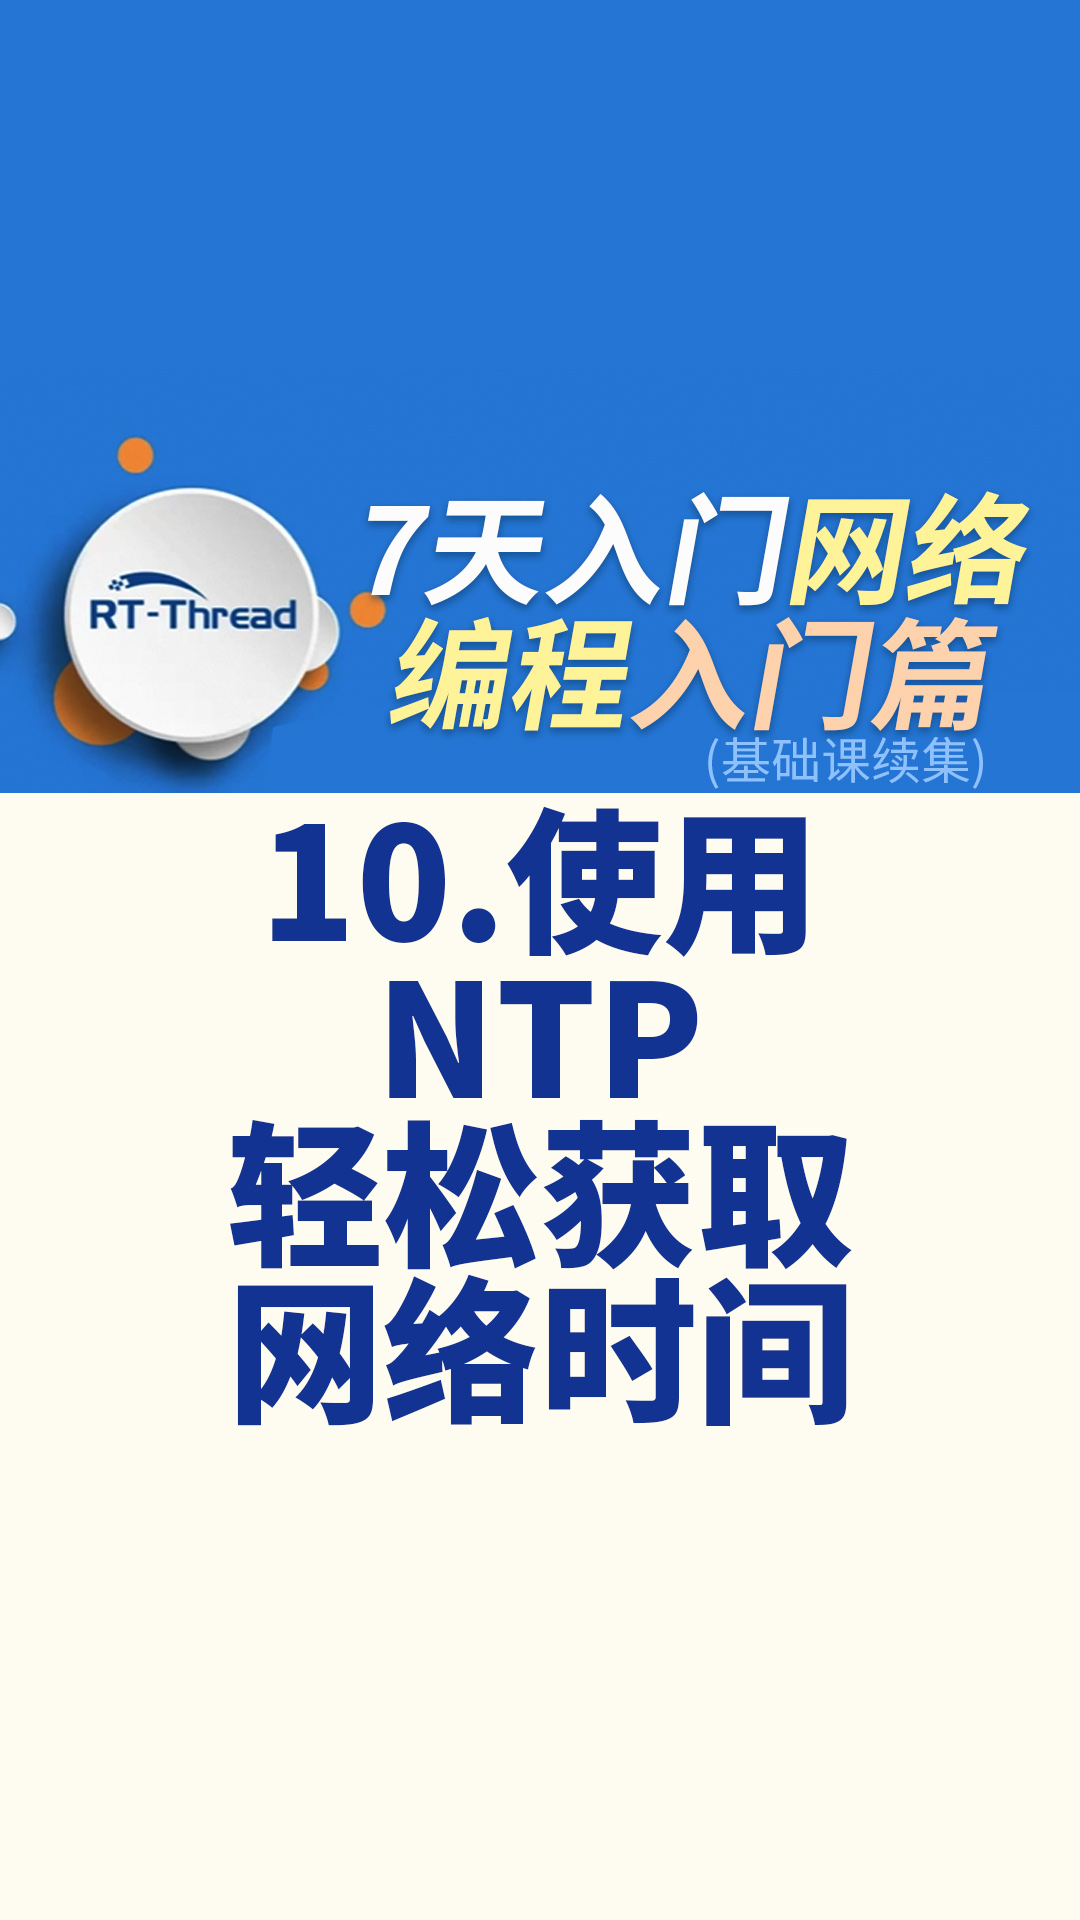 7天入门网络编程 - 10.使用 NTP 轻松获取网络时间   #网络编程 